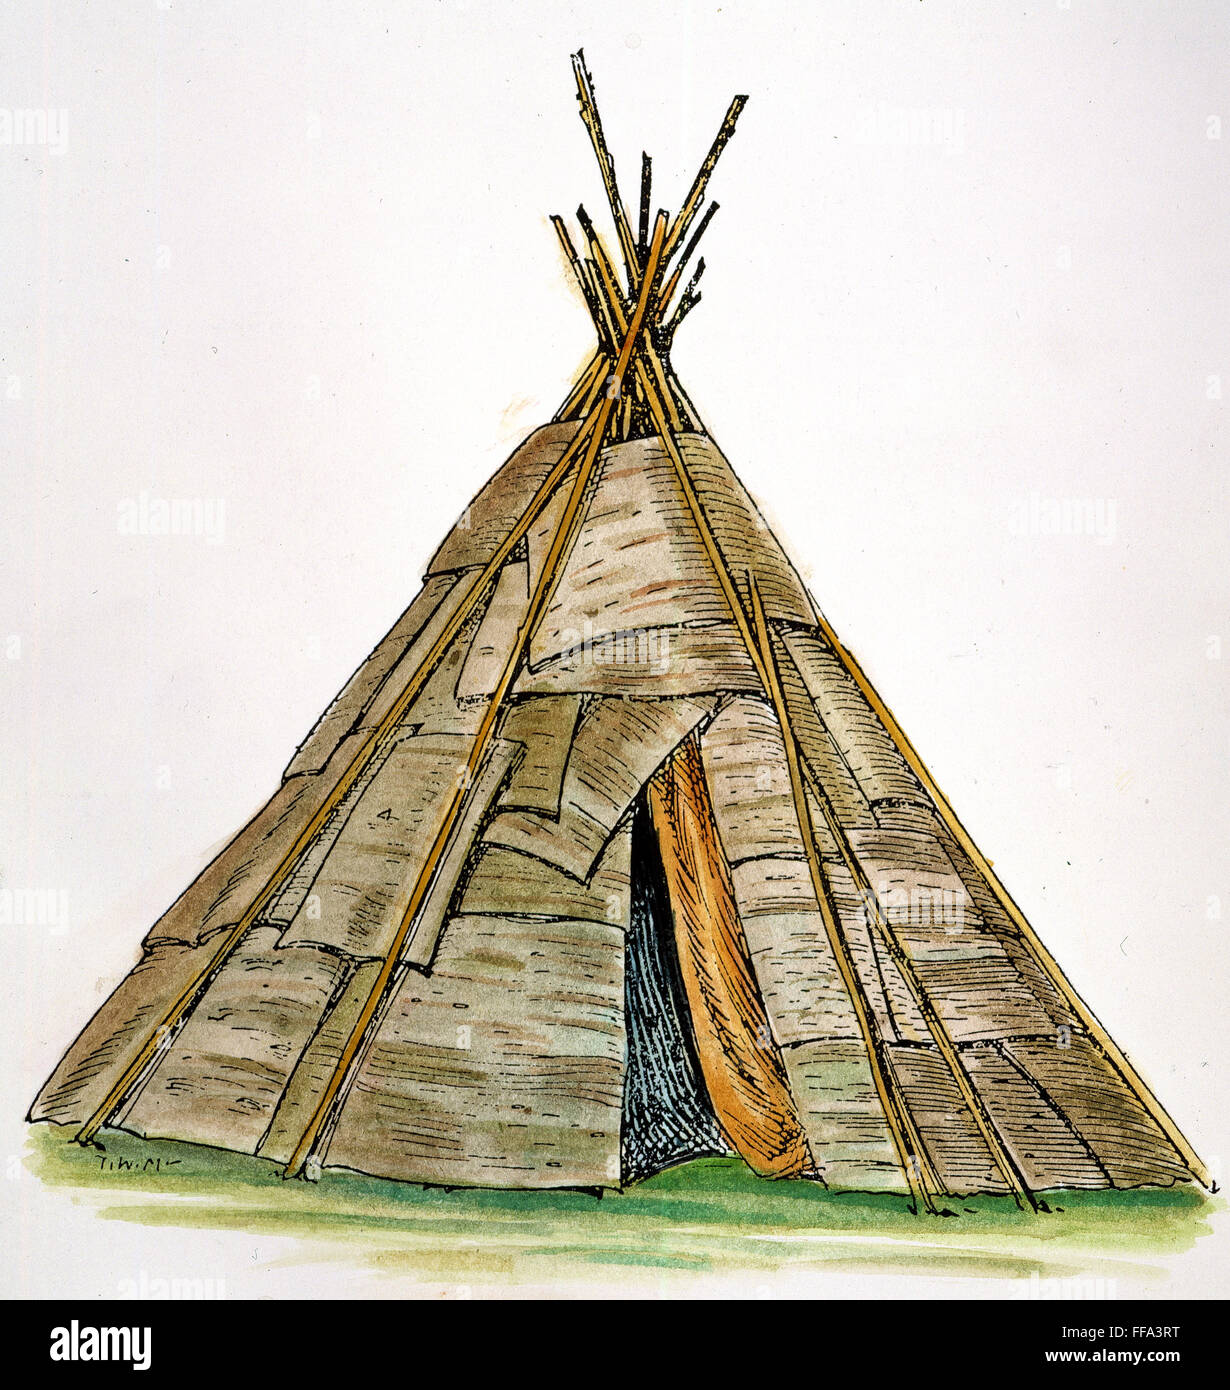 WIGWAM nativa americana. /Nel Ojibwa wigwam cónica de los Nativos Americanos, consistente en un marco de palos cubiertos con láminas de corteza de abedul. Dibujo por C.W. Jefferys. Foto de stock